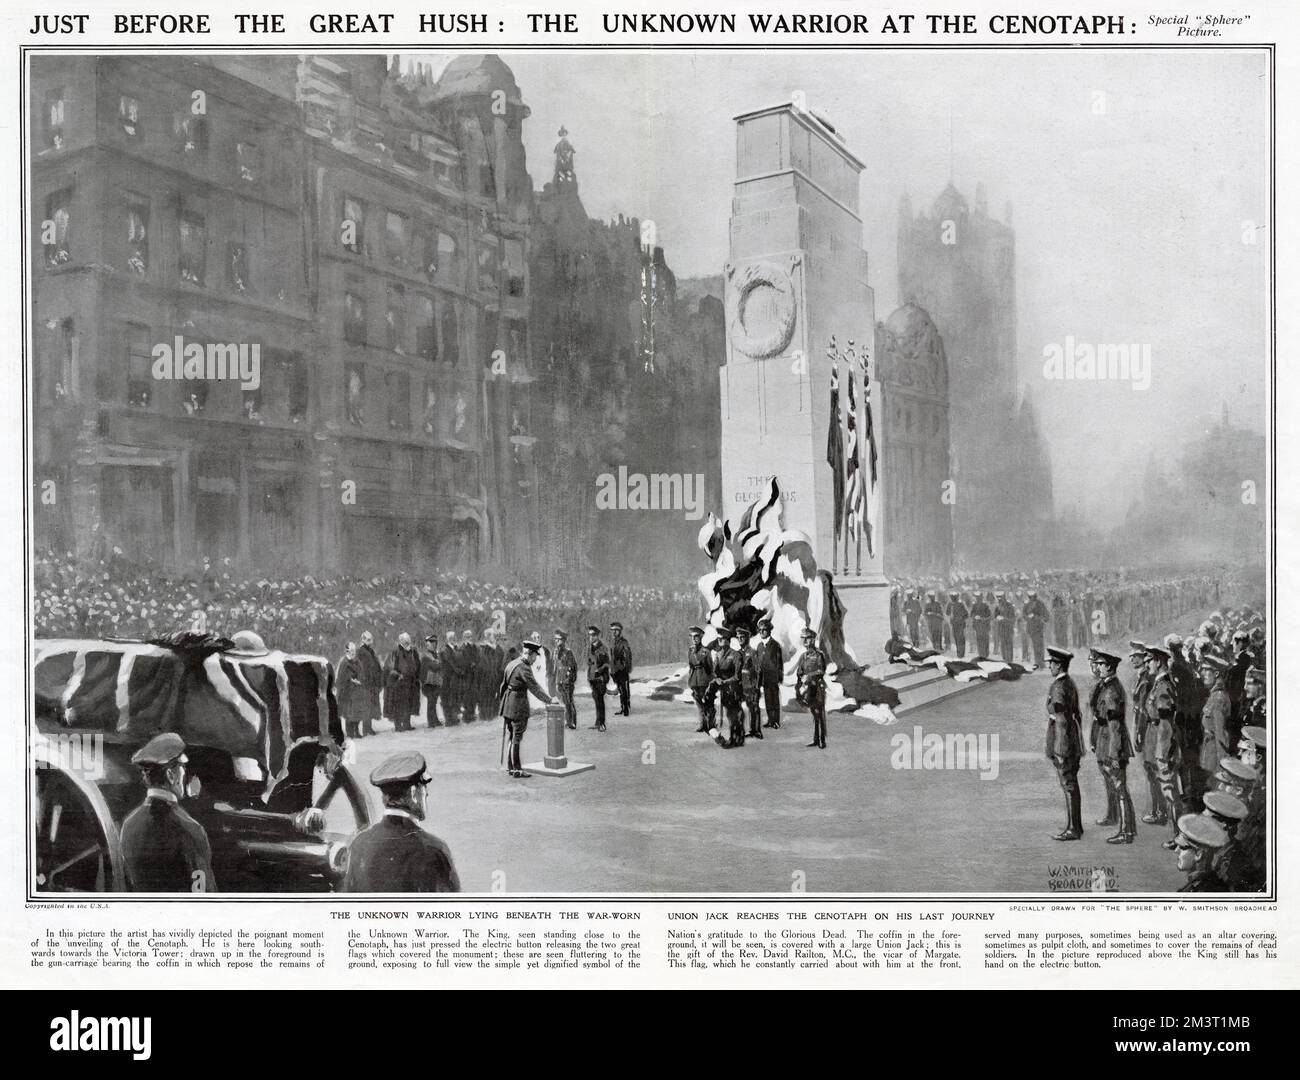 George V. sah ihn in der Nähe des neu errichteten Cenotaph in Whitehall, London, um 11 Uhr stehen. Als Big Ben zu läuten beginnt, drückt der König den elektrischen Knopf und löst die beiden Union Jacks aus, die das Denkmal bedeckten. Die Flaggen fallen auf den Boden und enthüllen das Kriegsdenkmal. Die Glocke verstummt, alle schweigen für zwei Minuten. Im Vordergrund steht der Waffenwagen mit den Überresten des Unbekannten Kriegers, bevor der Sarg nach Westminster Abbey, London, geht, um begraben zu werden. 11.. November 1920 Stockfoto